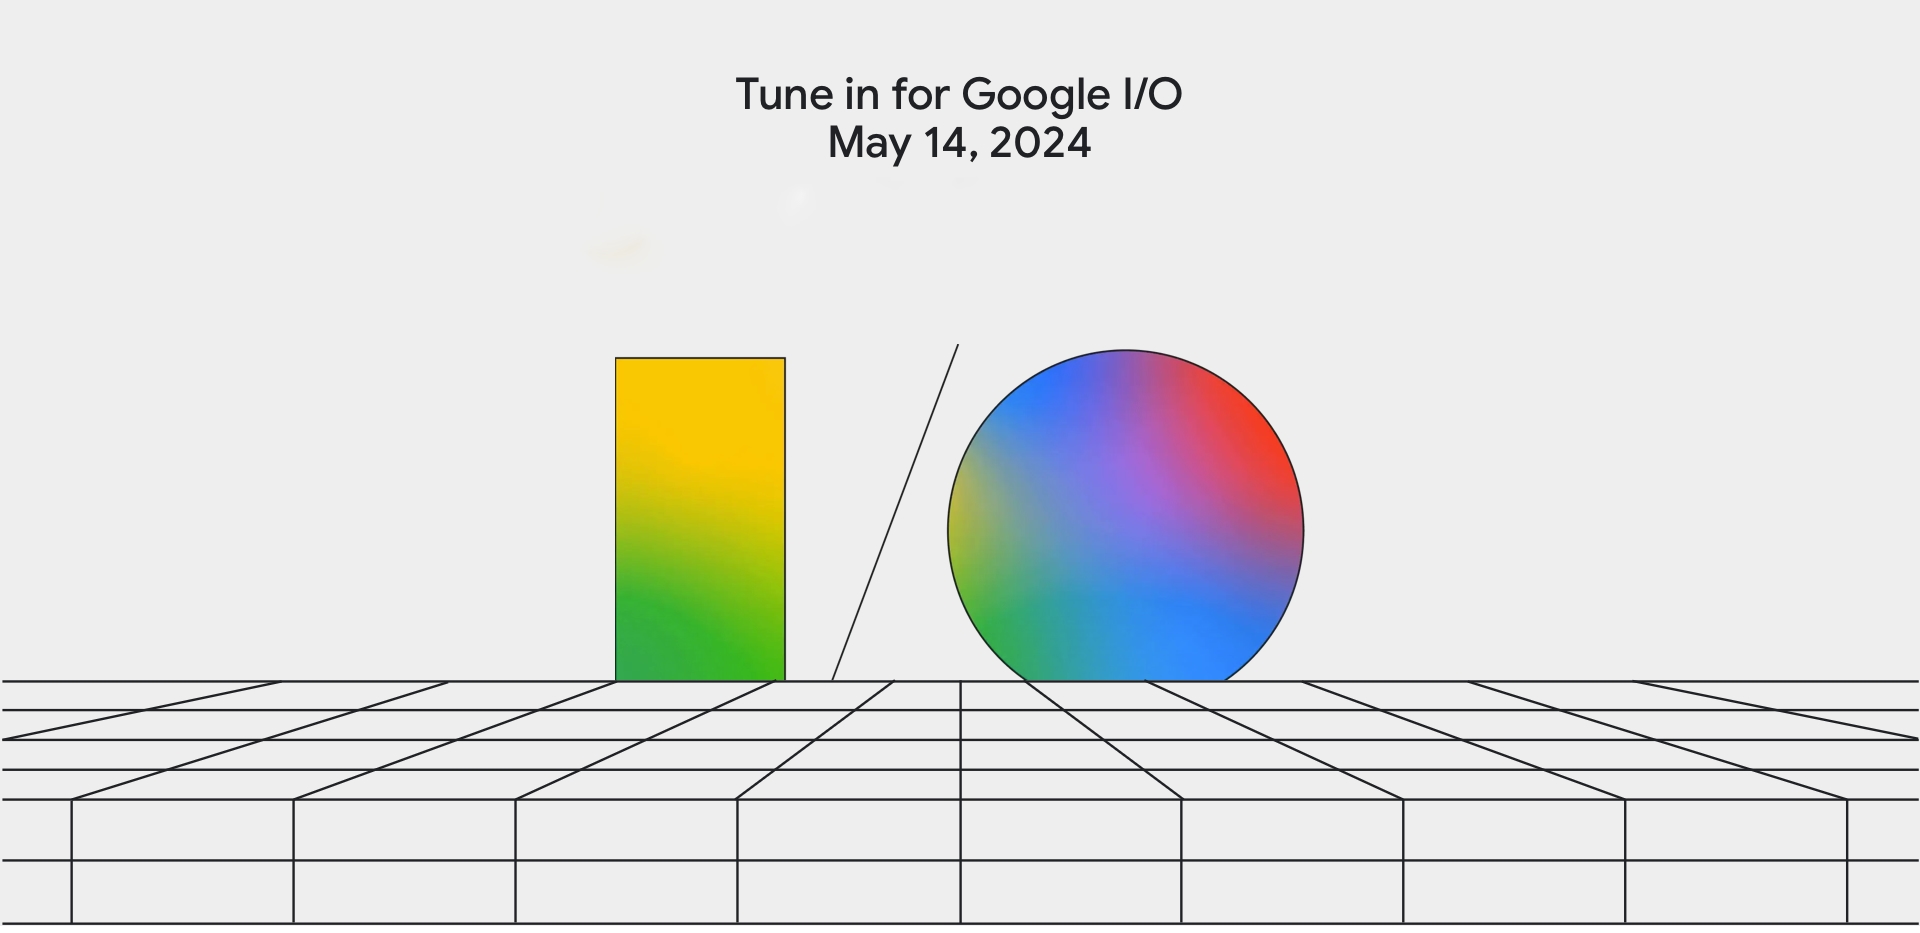 Nu er det officielt: Google afholder sin I/O 2024-konference i første halvdel af maj.